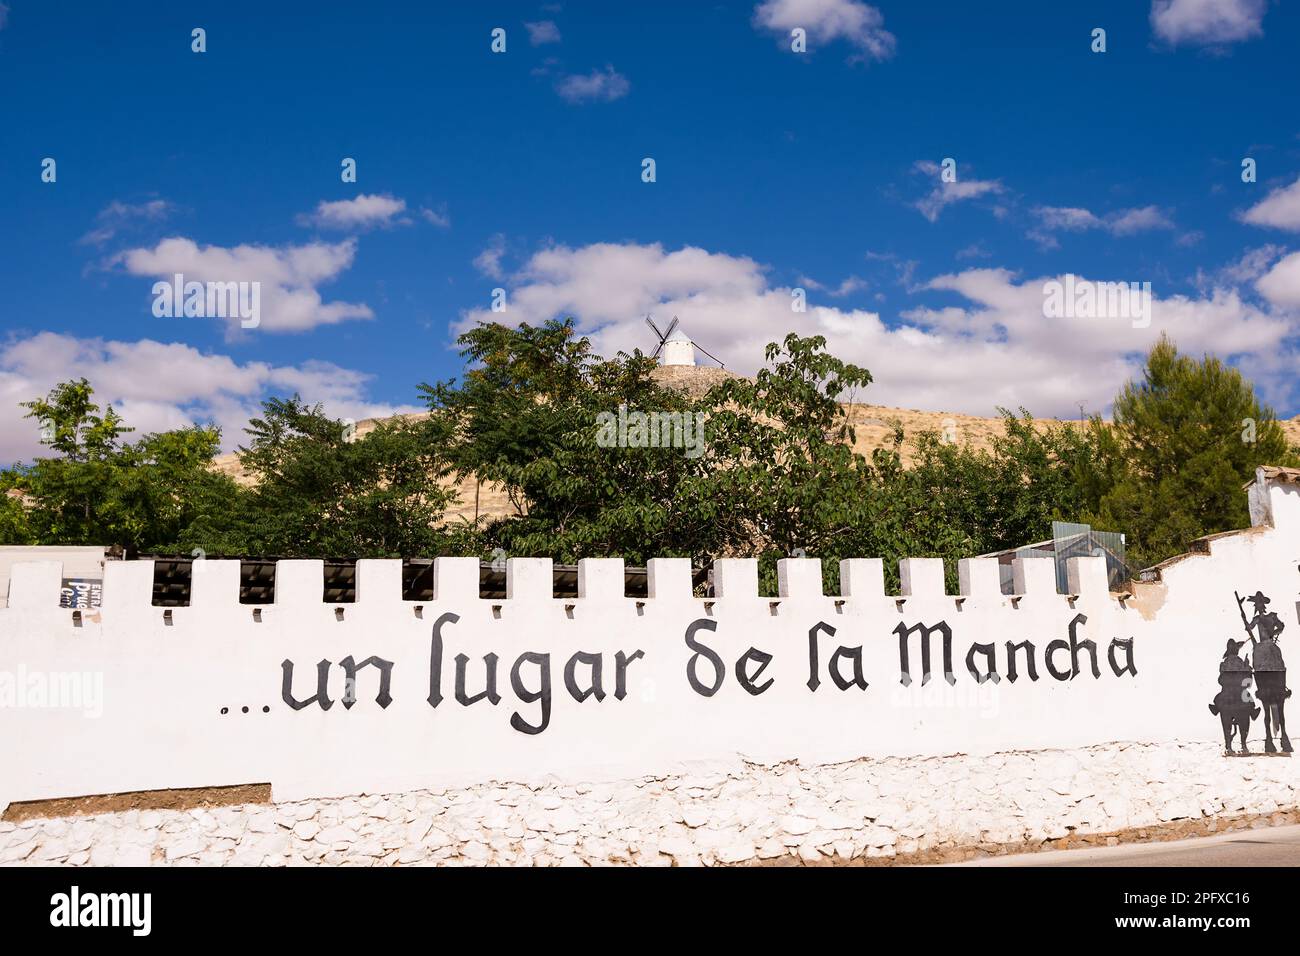 Parete bianca con l'iscrizione 'un lugar de la Mancha' (traduzione: Un luogo a la Mancha) citazione di Don Chisciotte di Cervantes Foto Stock